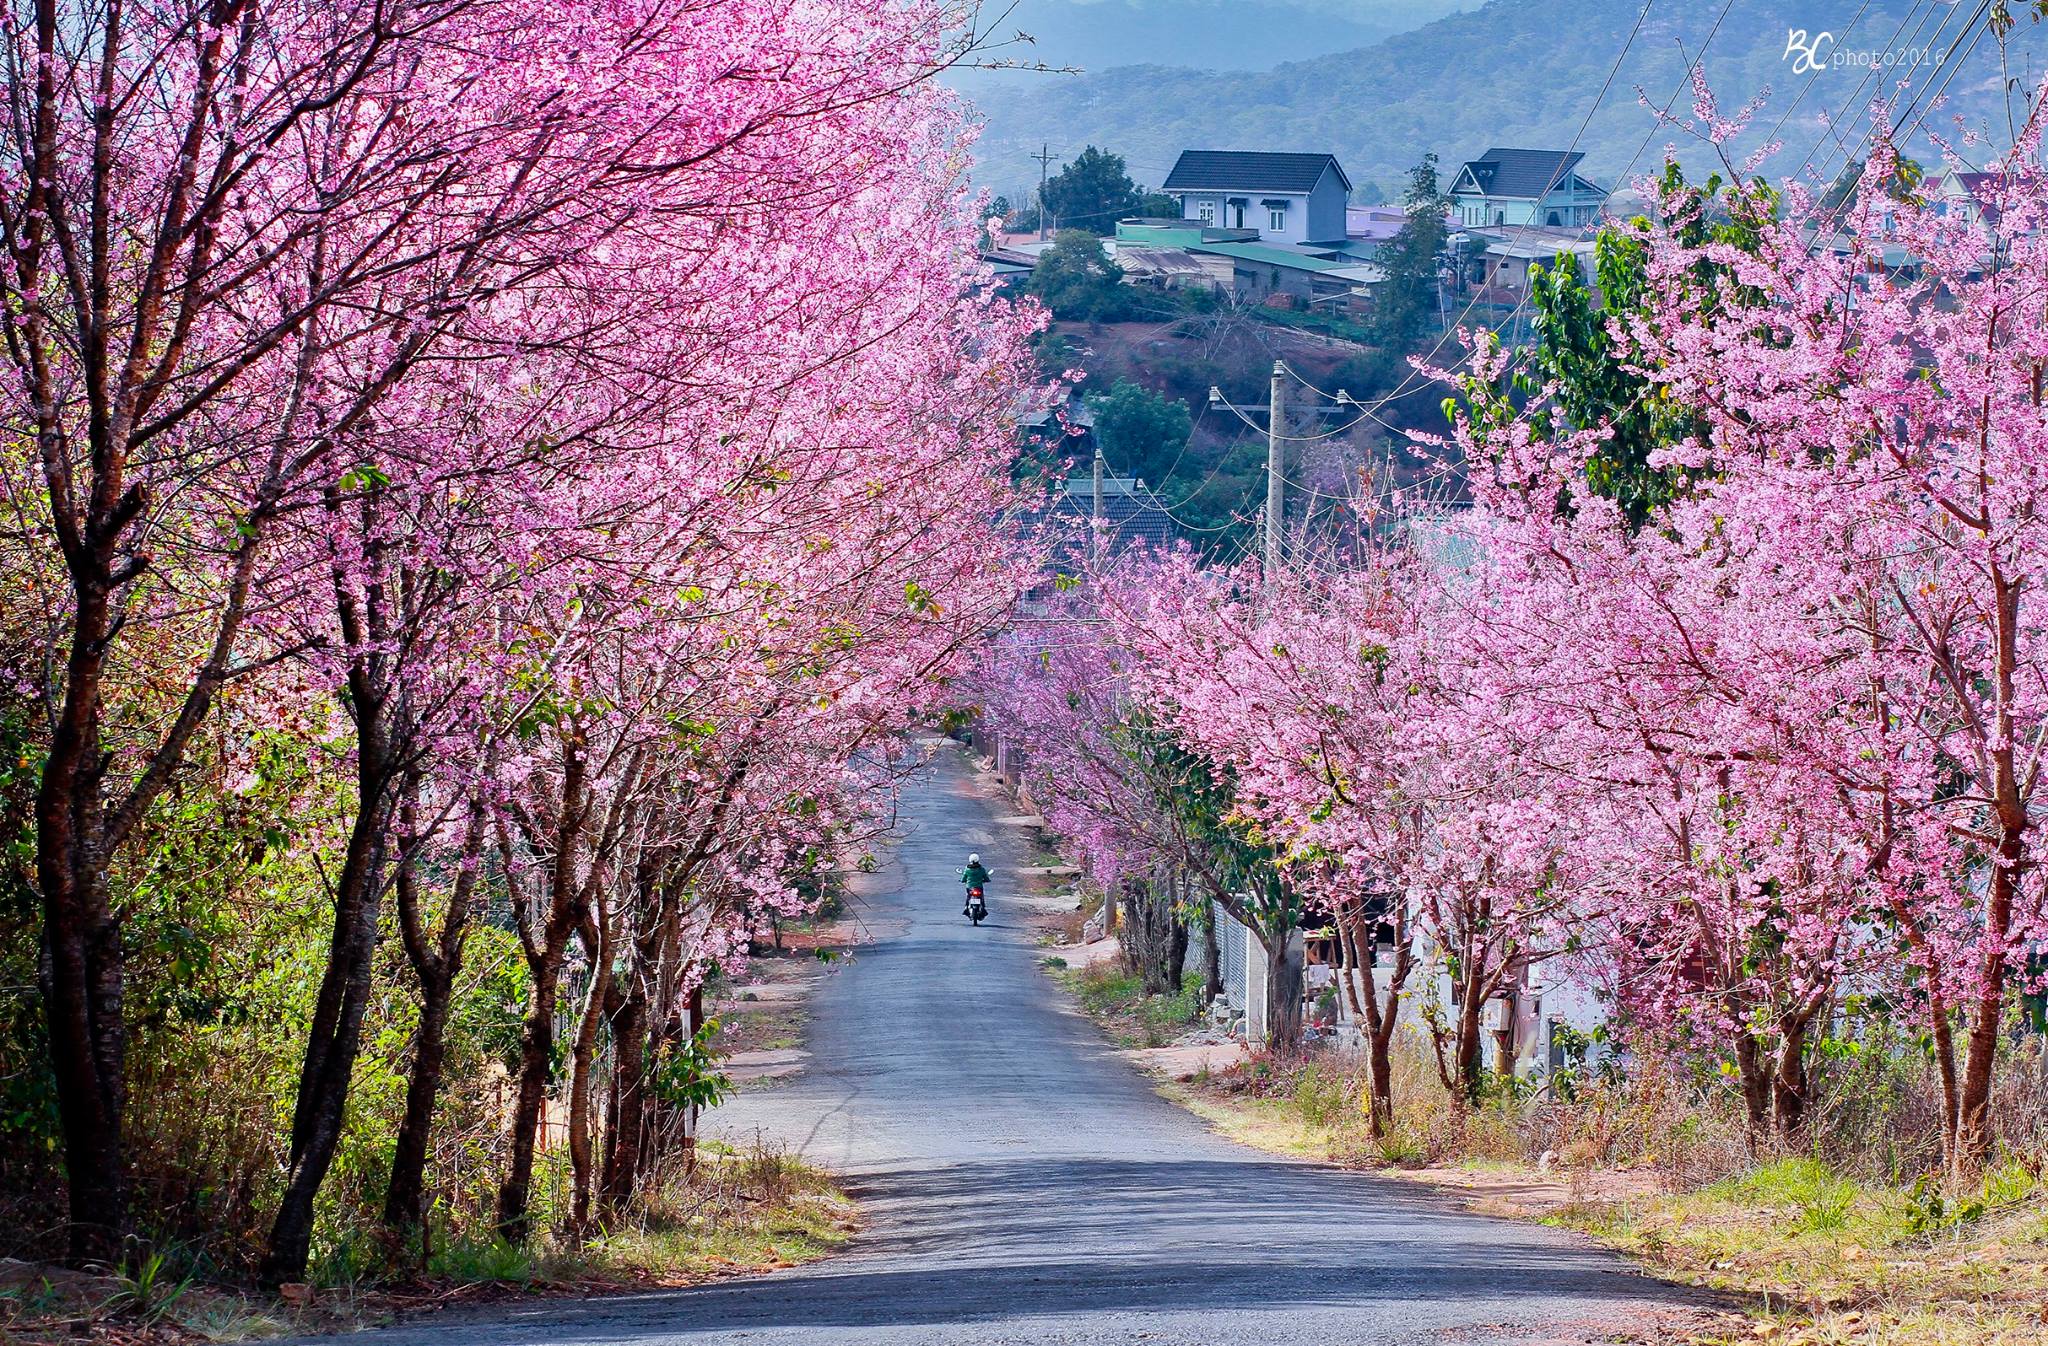 Du lịch Đà Lạt vào mùa xuân, du khách sẽ có cơ hội chiêm ngưỡng vẻ đẹp thơ mộng của những con đường ngập tràn sắc hoa anh đào